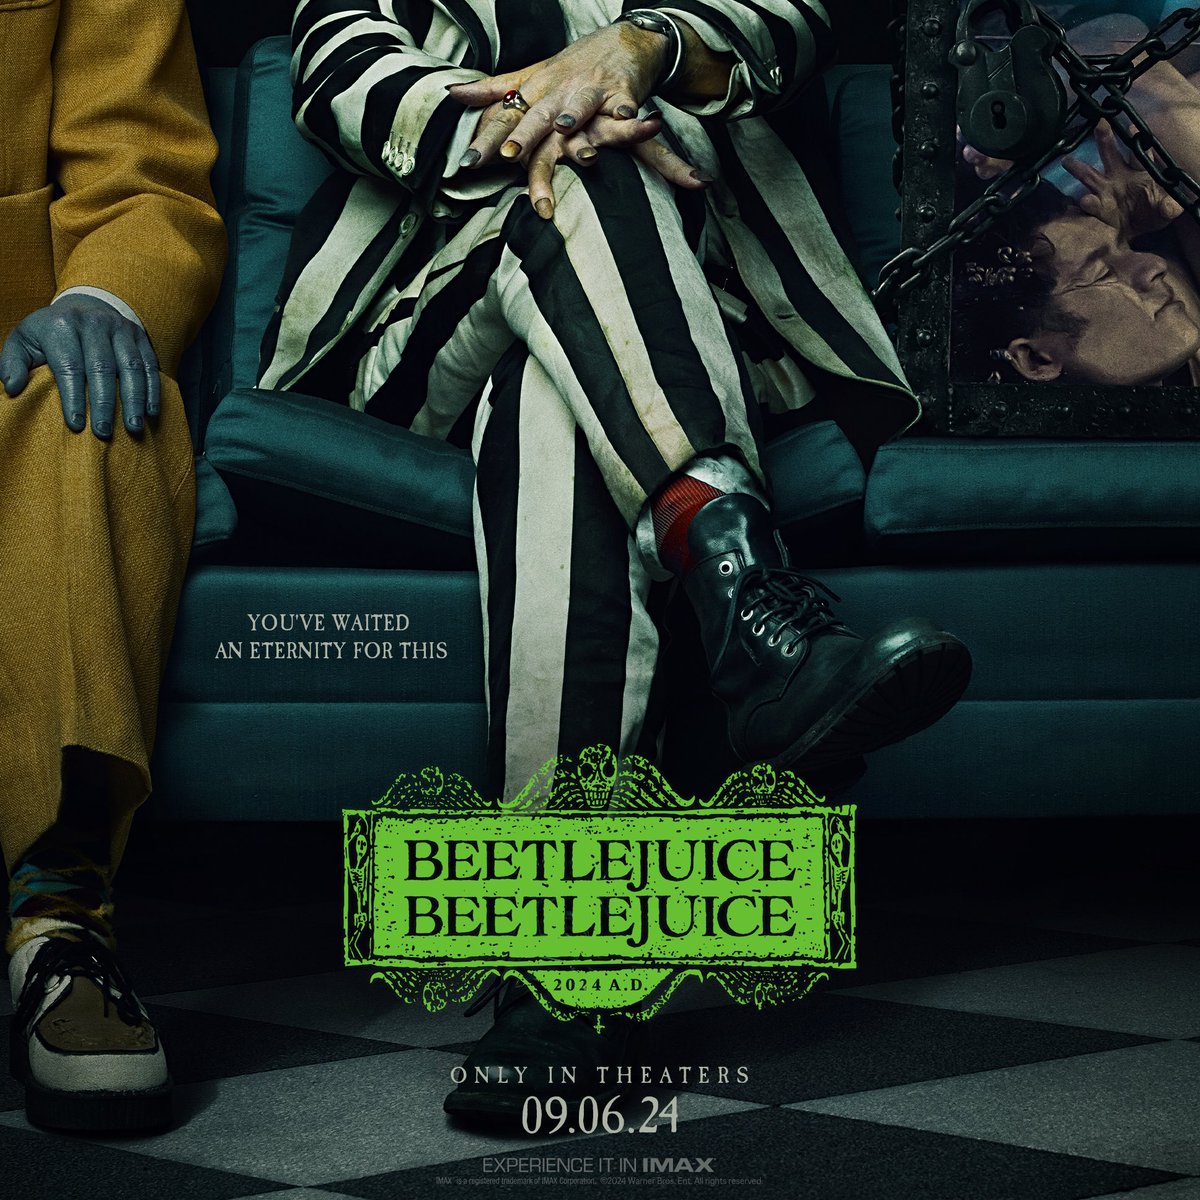 Nuevo póster de 'BEETLEJUICE 2' El tráiler se lanza el jueves. #BeetleJuiceBeetleJuice #Beetlejuice2